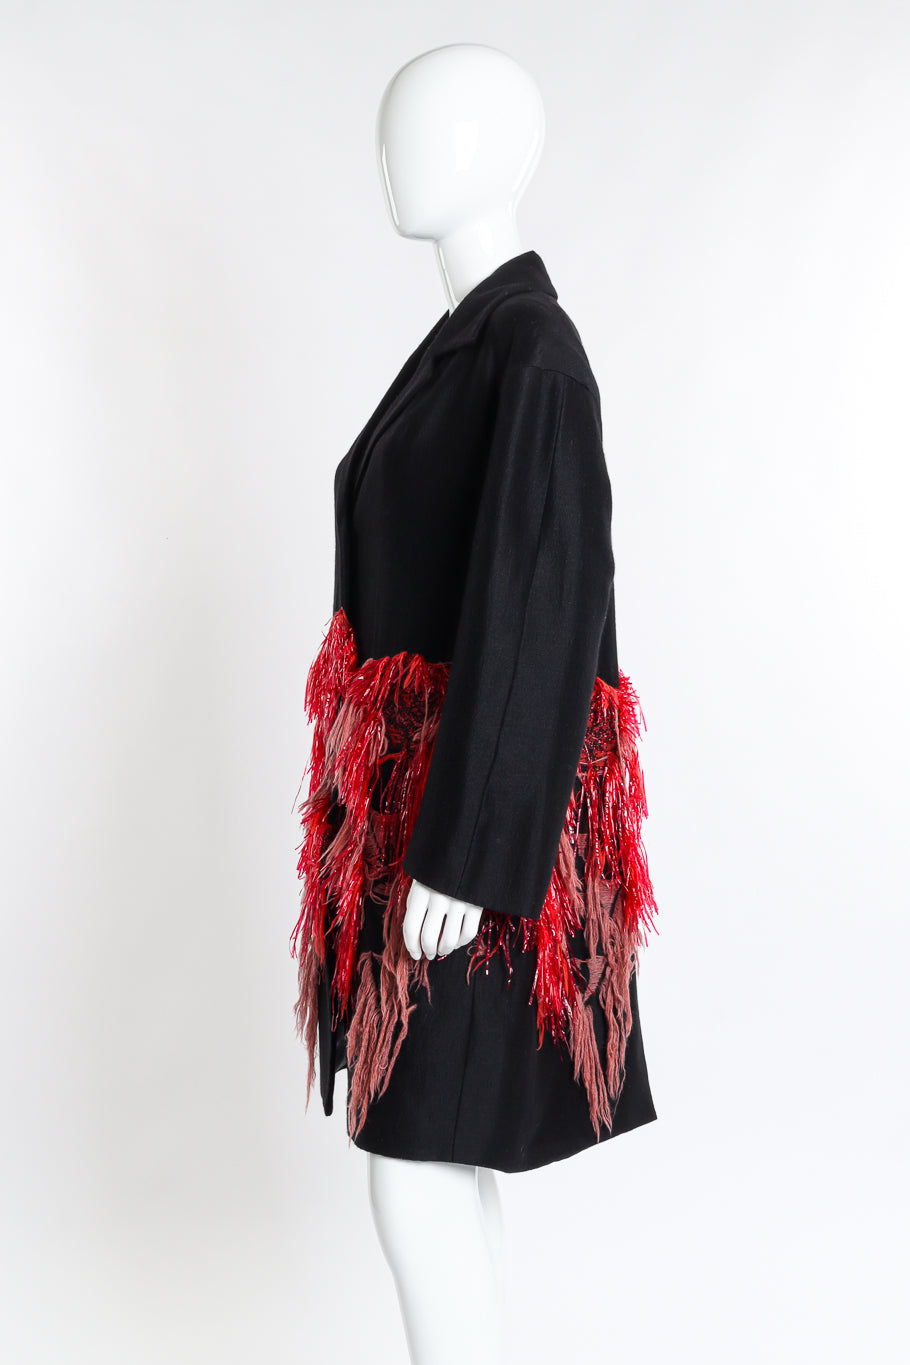 Dries Van Noten Tassel & Tinsel Feature Coat side on mannequin @recess la